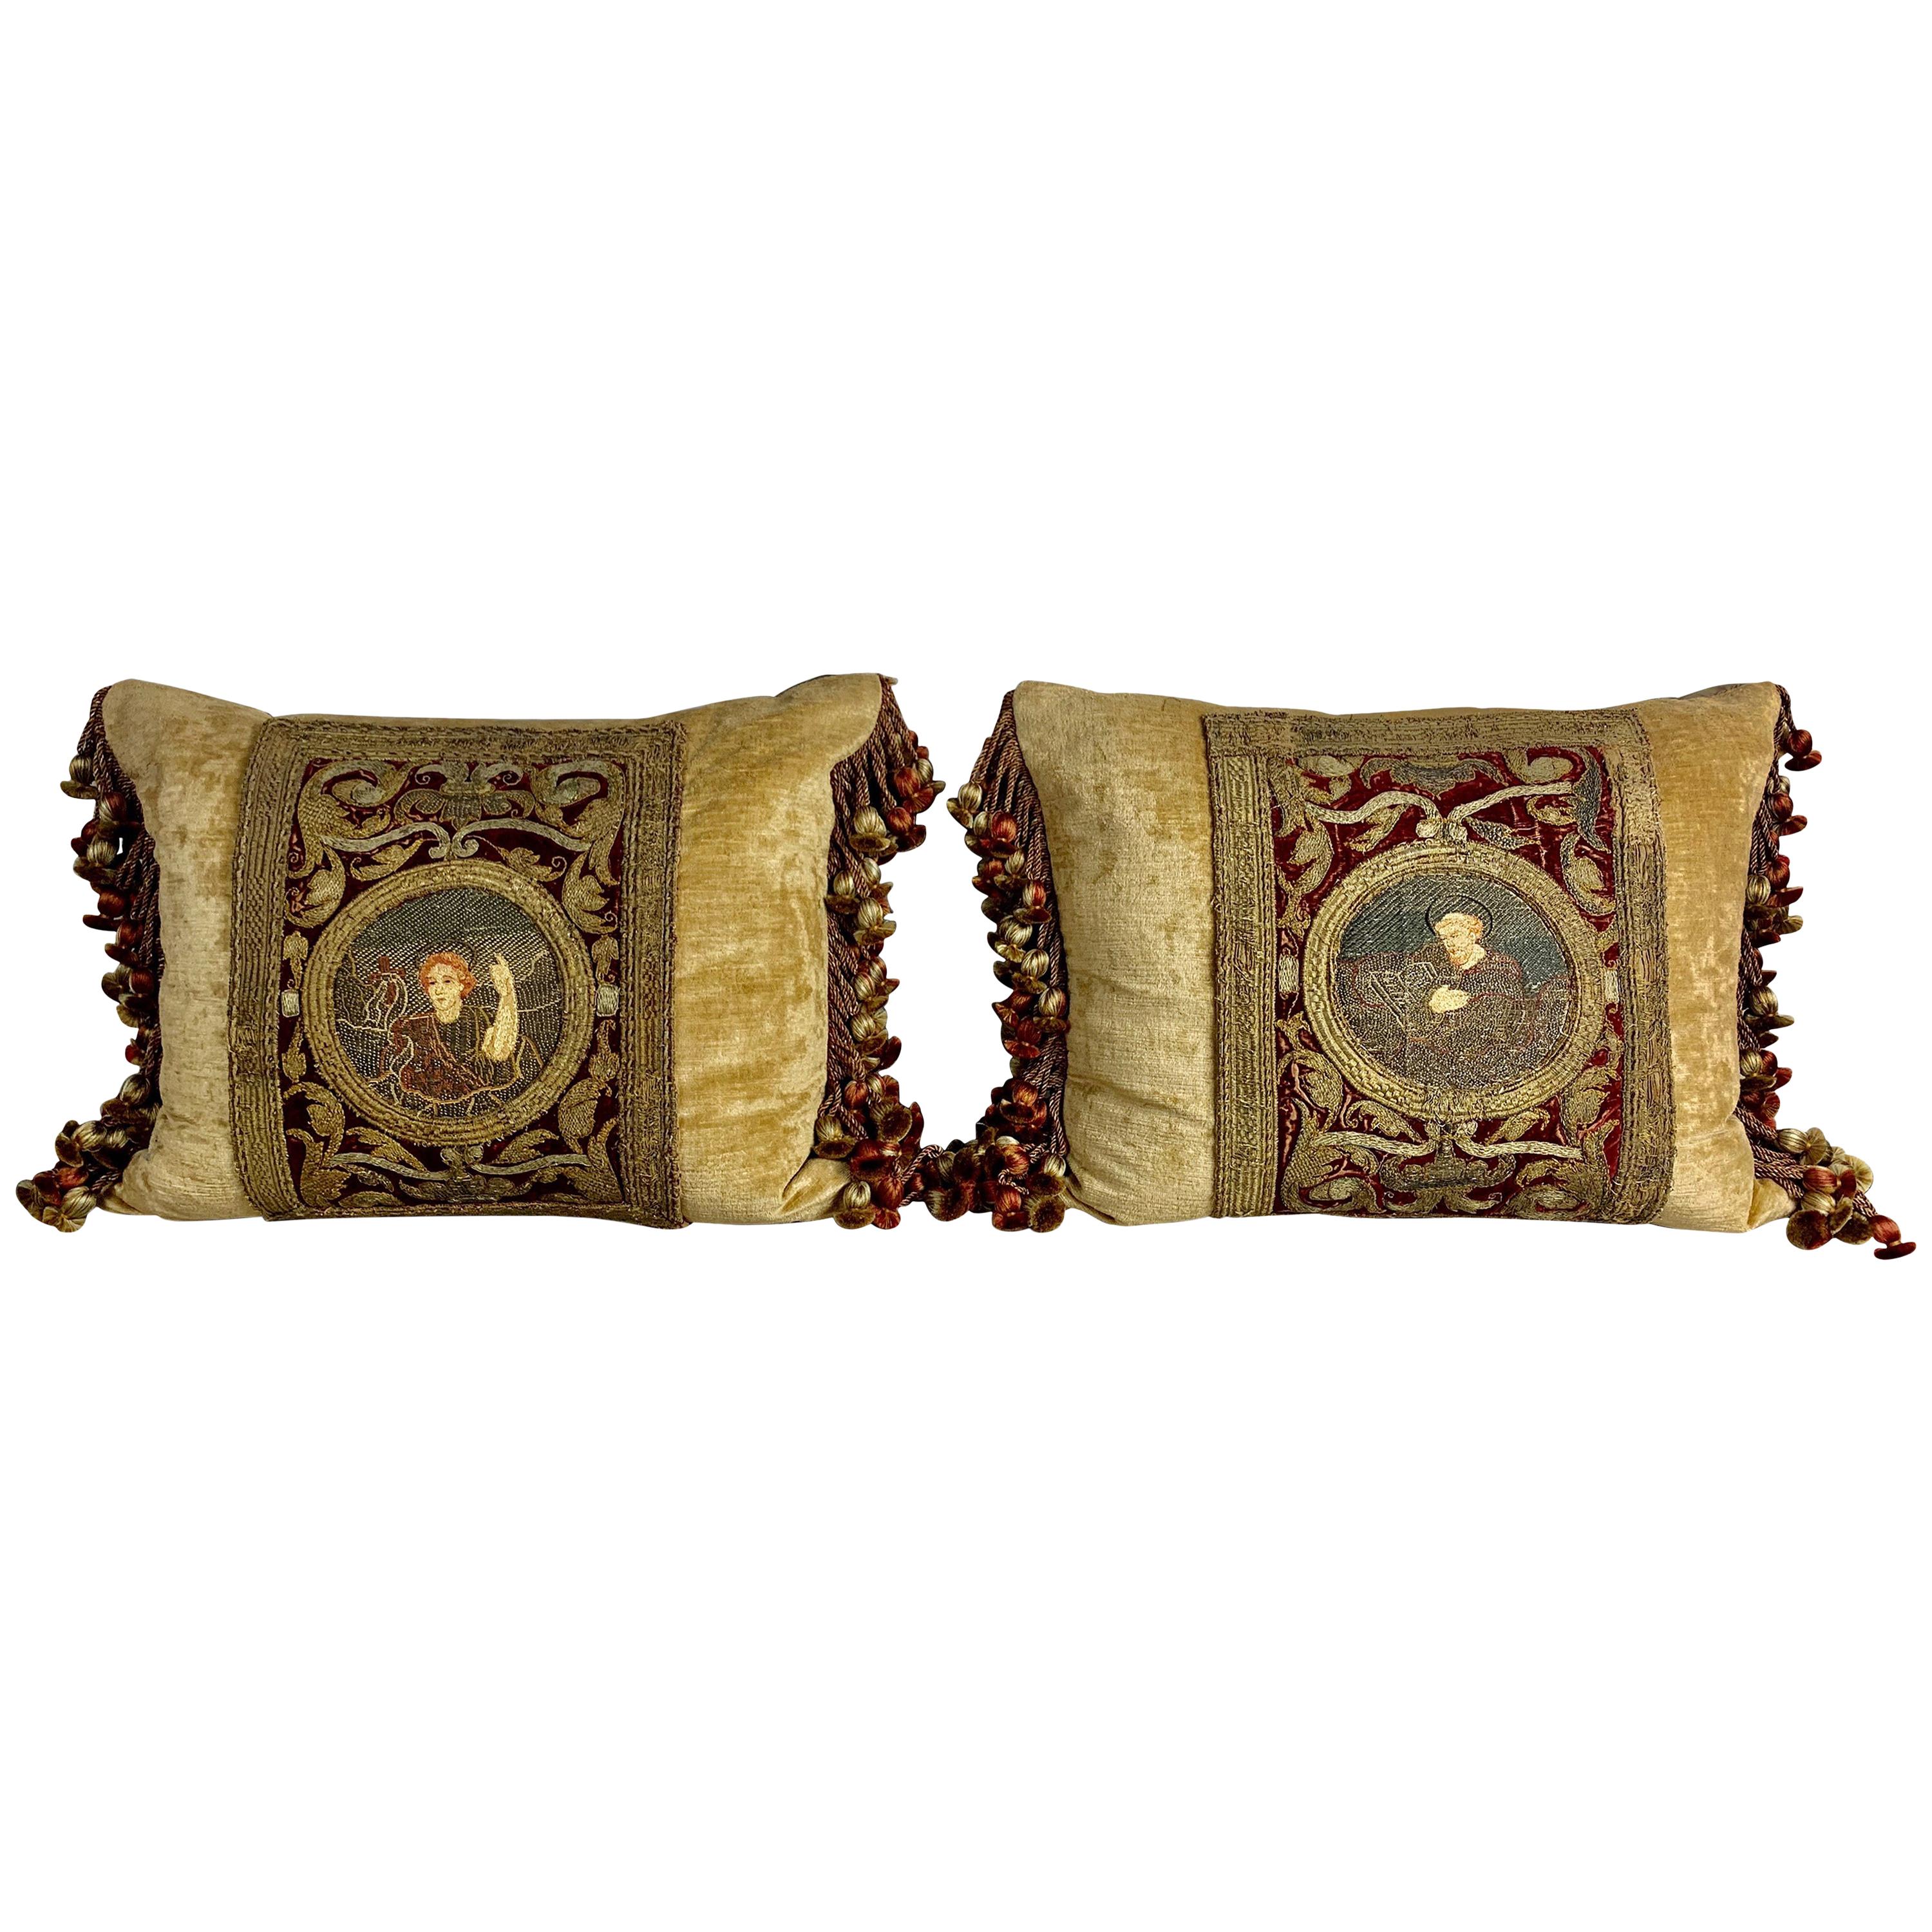 Pair of 18th Century Italian Embroidered Metallic Velvet Pillows